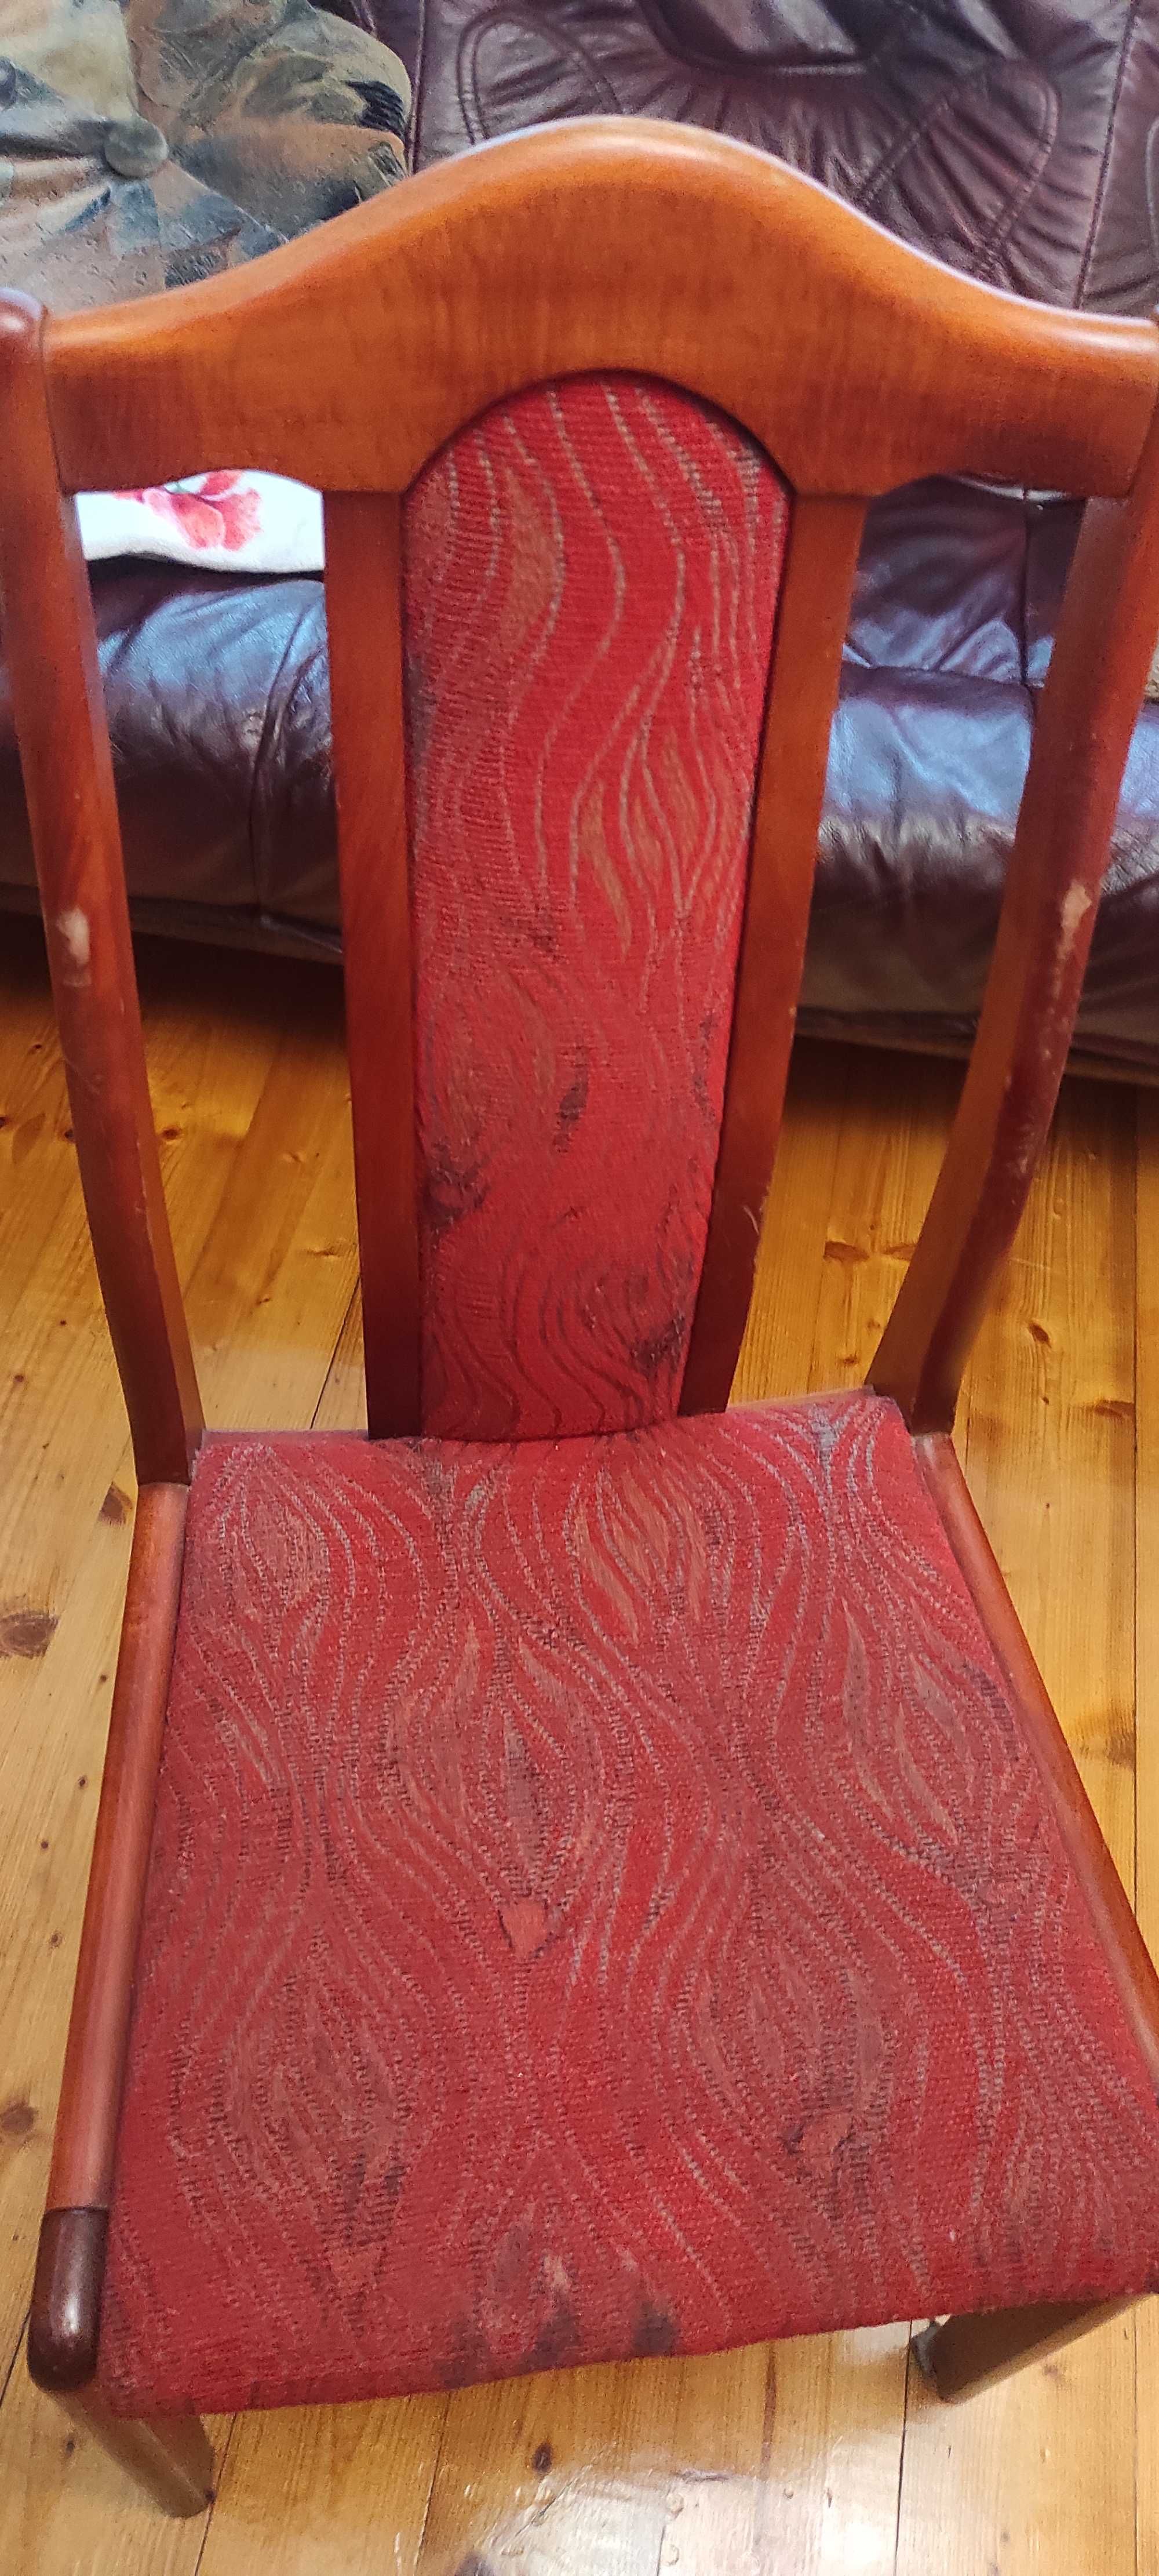 Stół drewniany 190cm wraz z 4 krzesłami